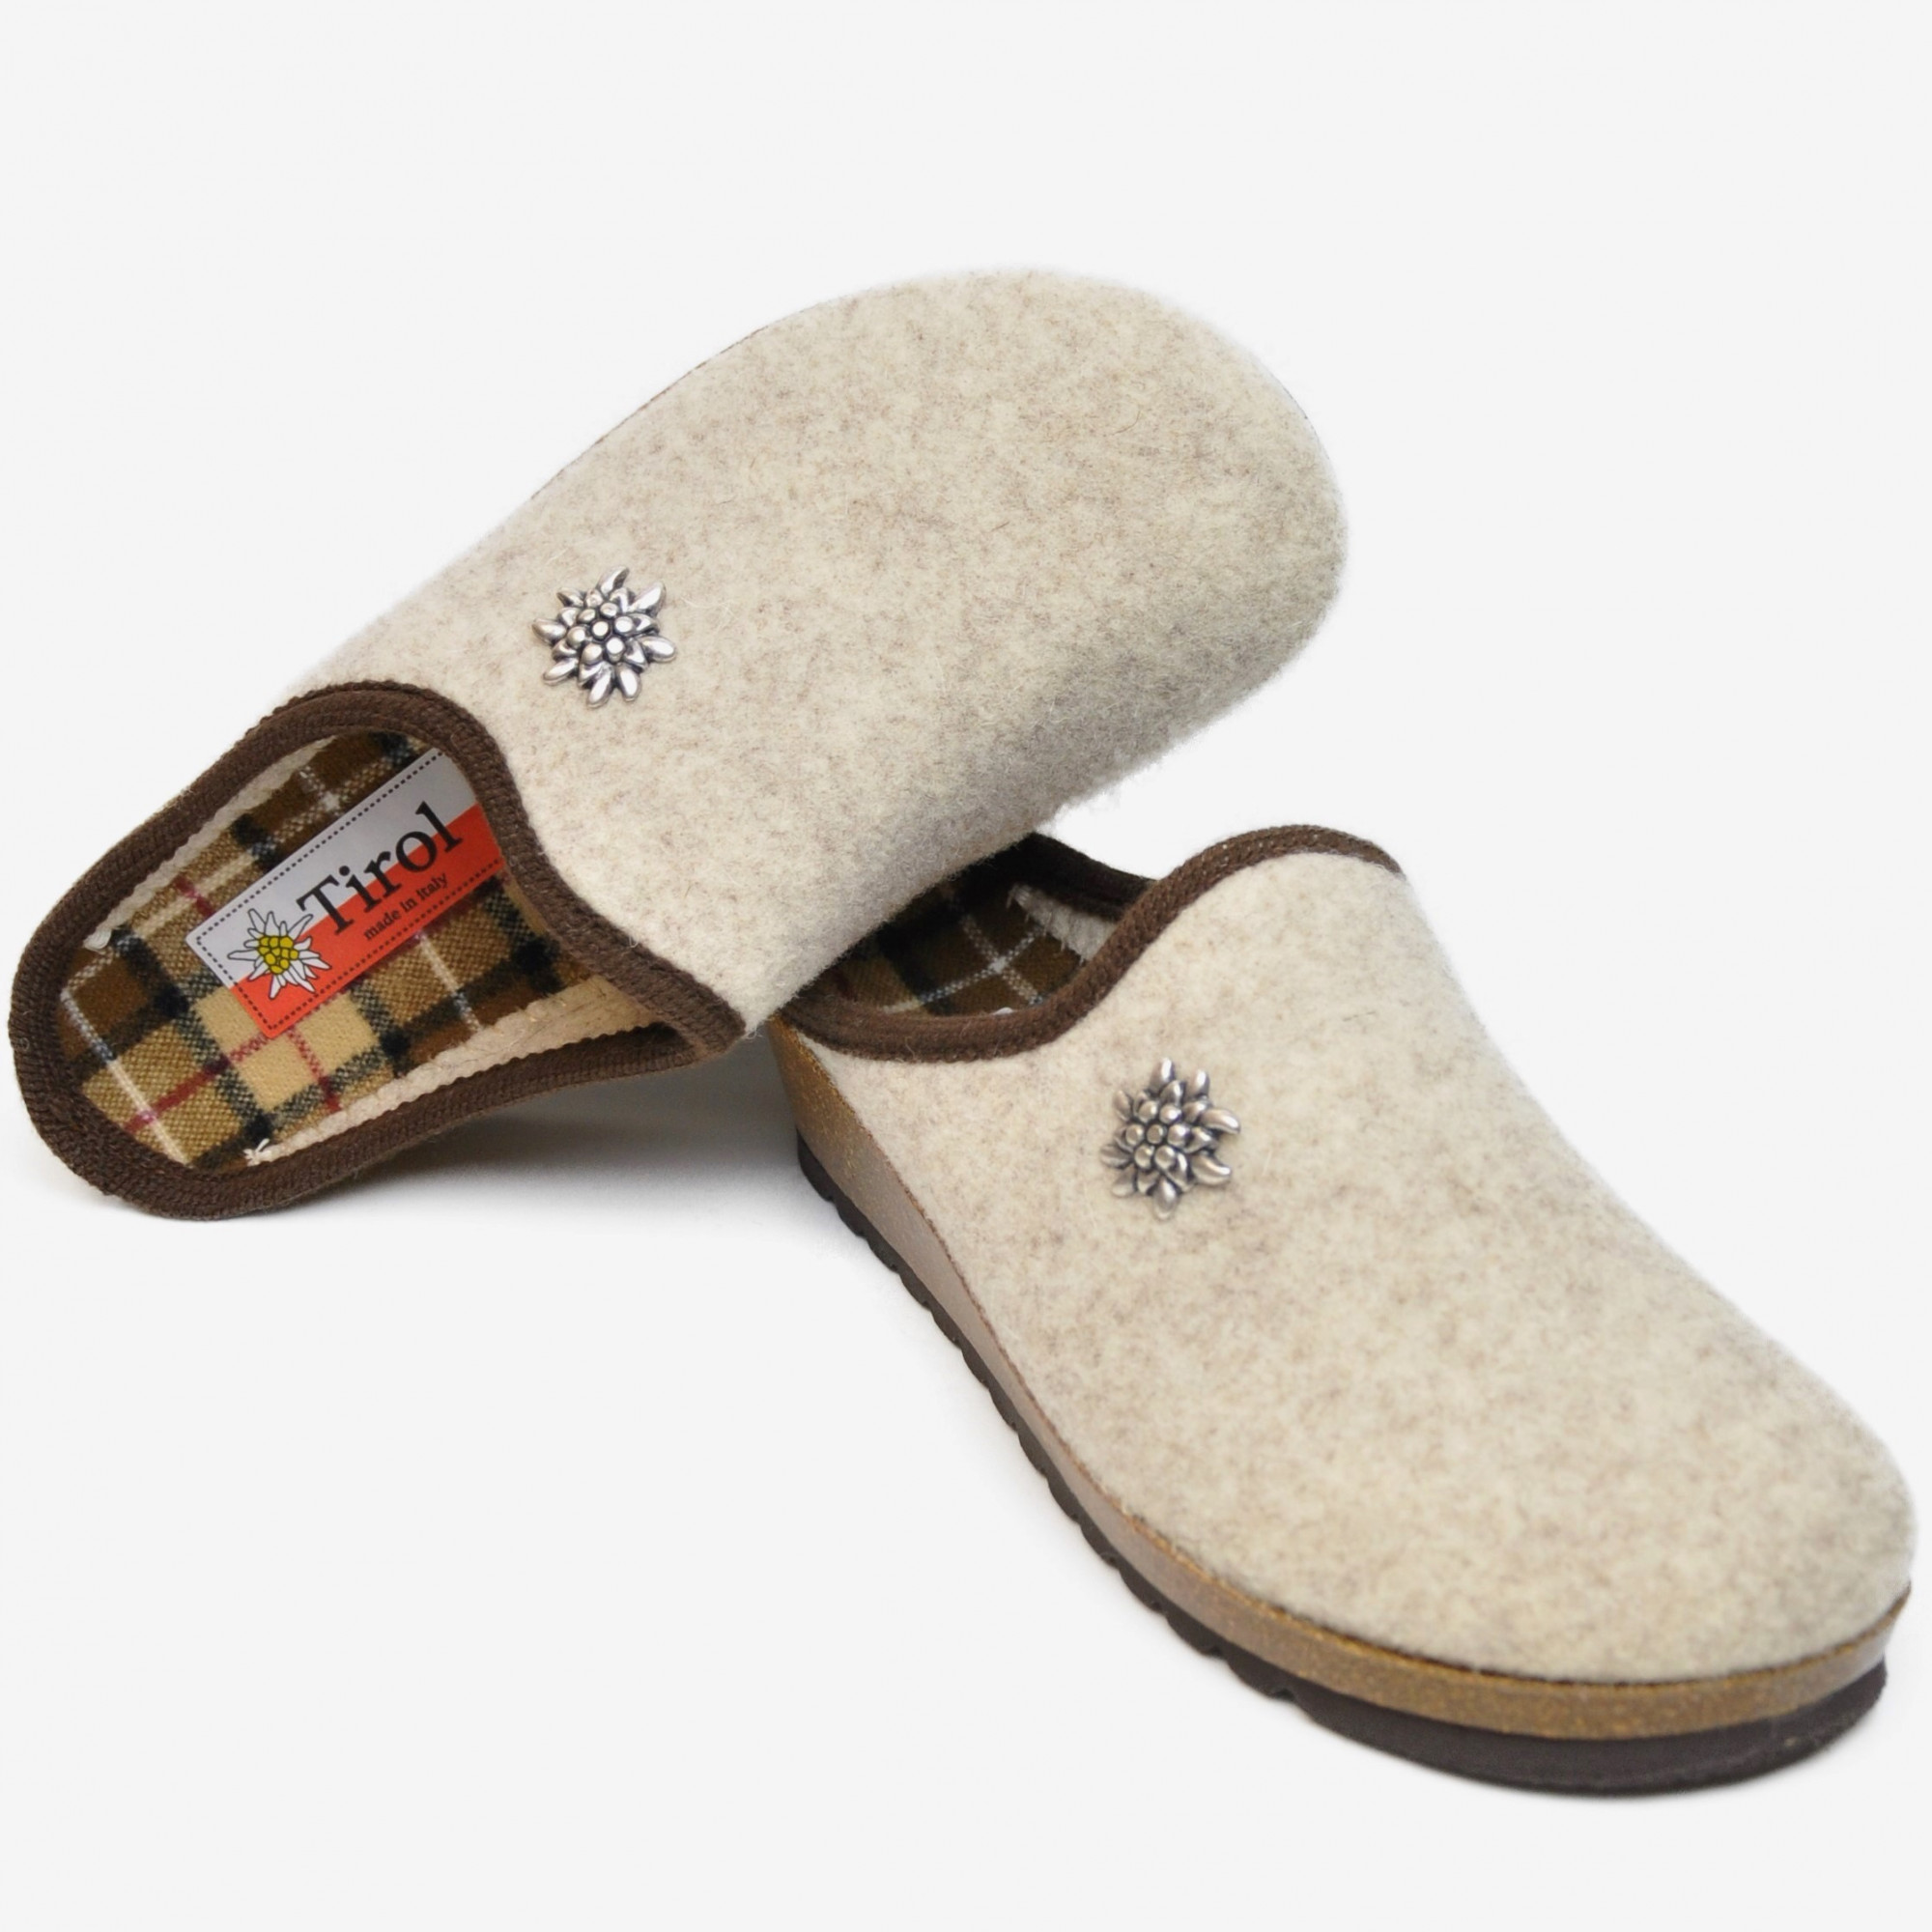 wedge heel bedroom slippers